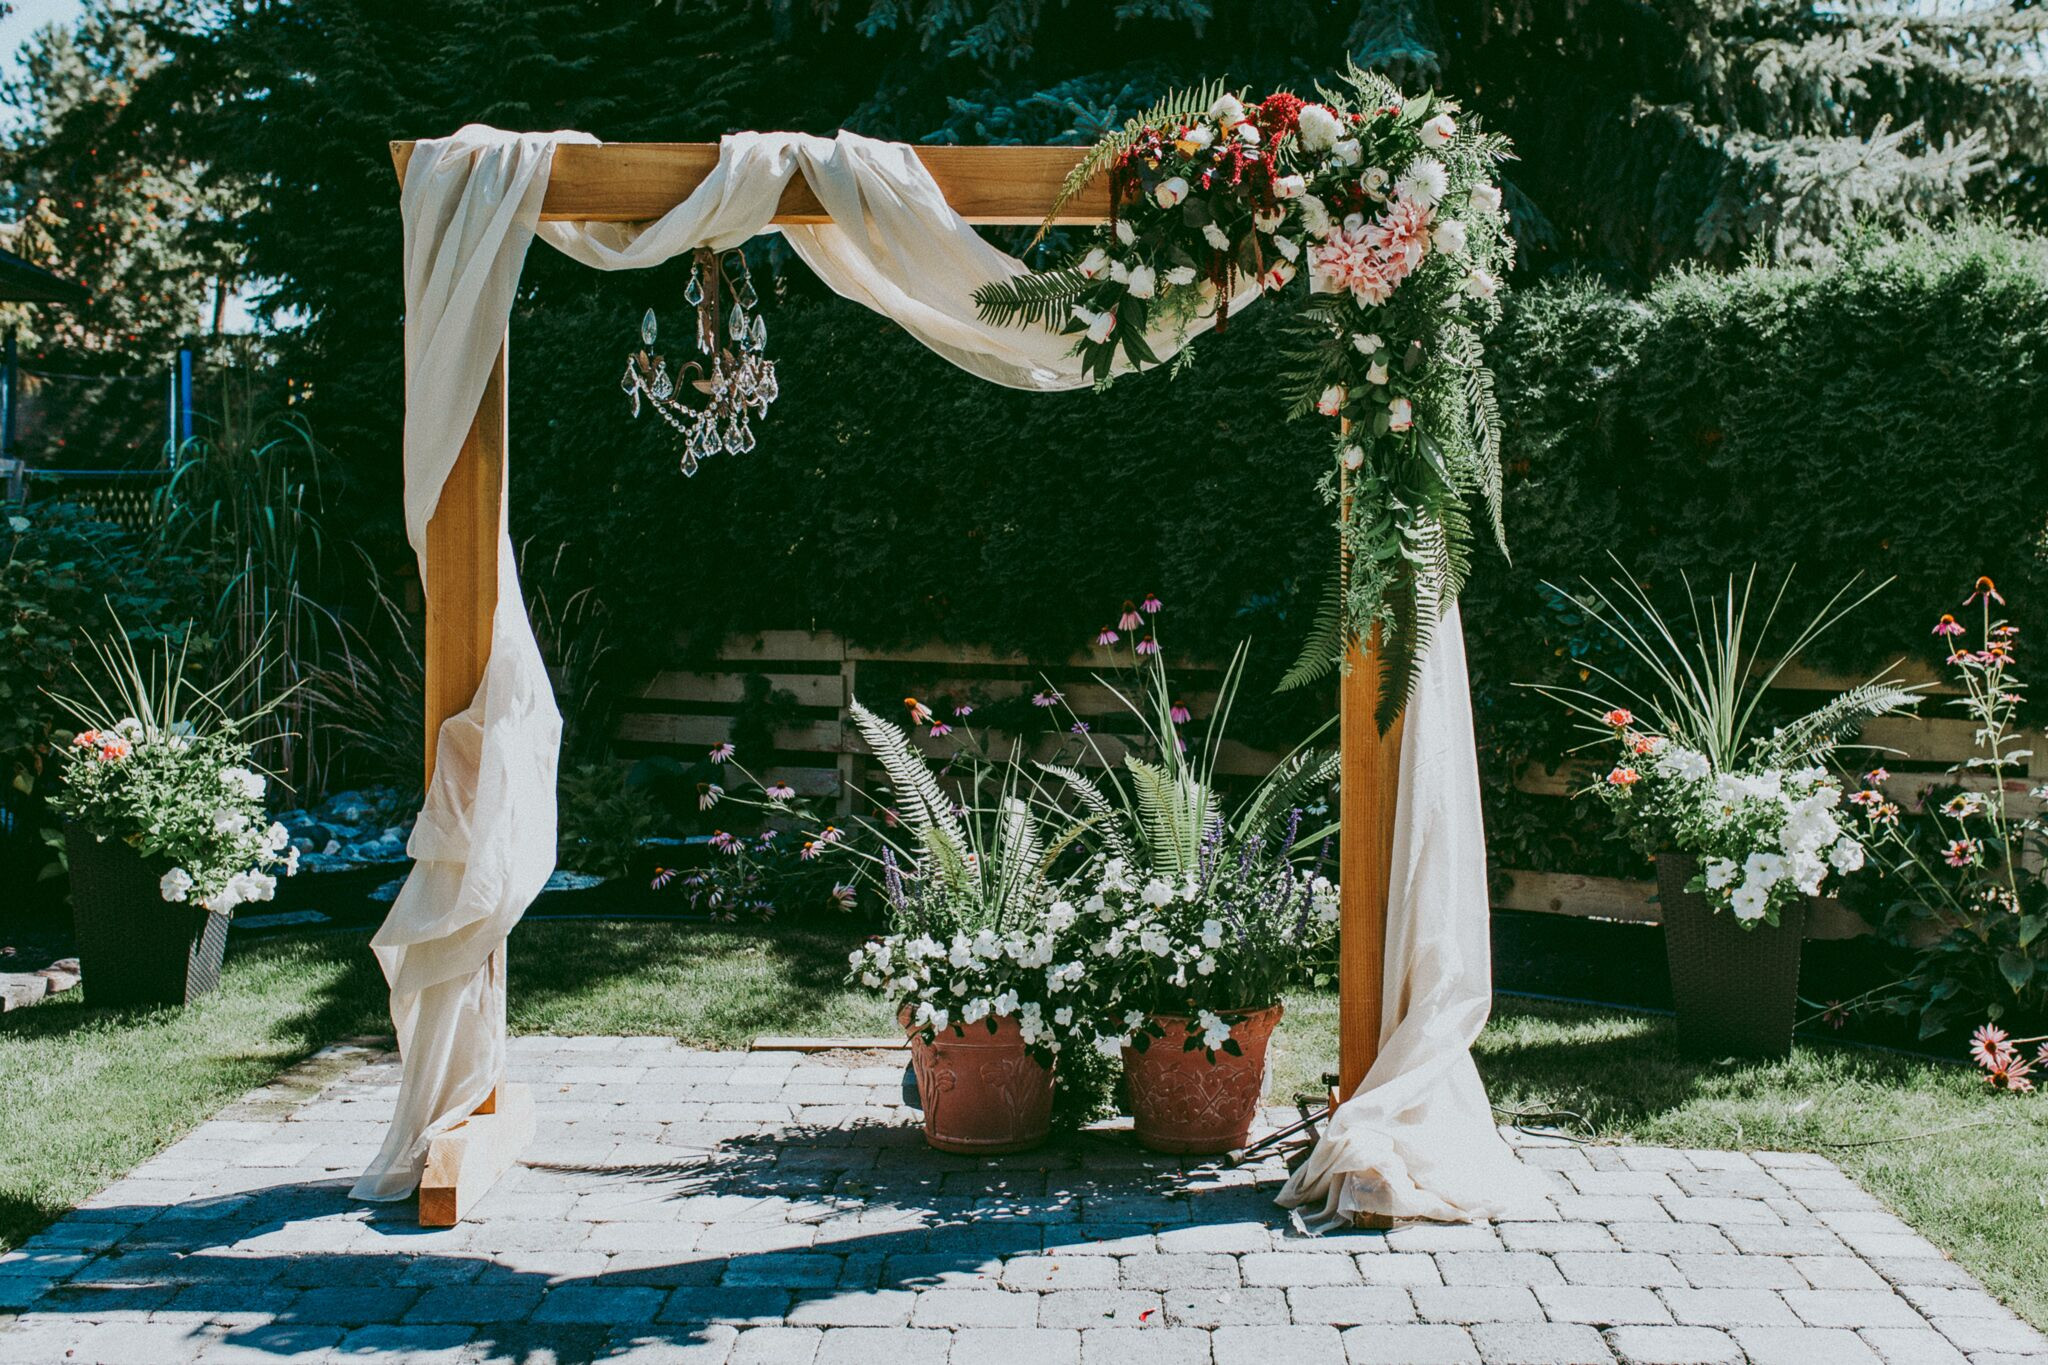 DIY Wedding Arches Ideas
 DIY Wooden Wedding Arch With Flower Garland